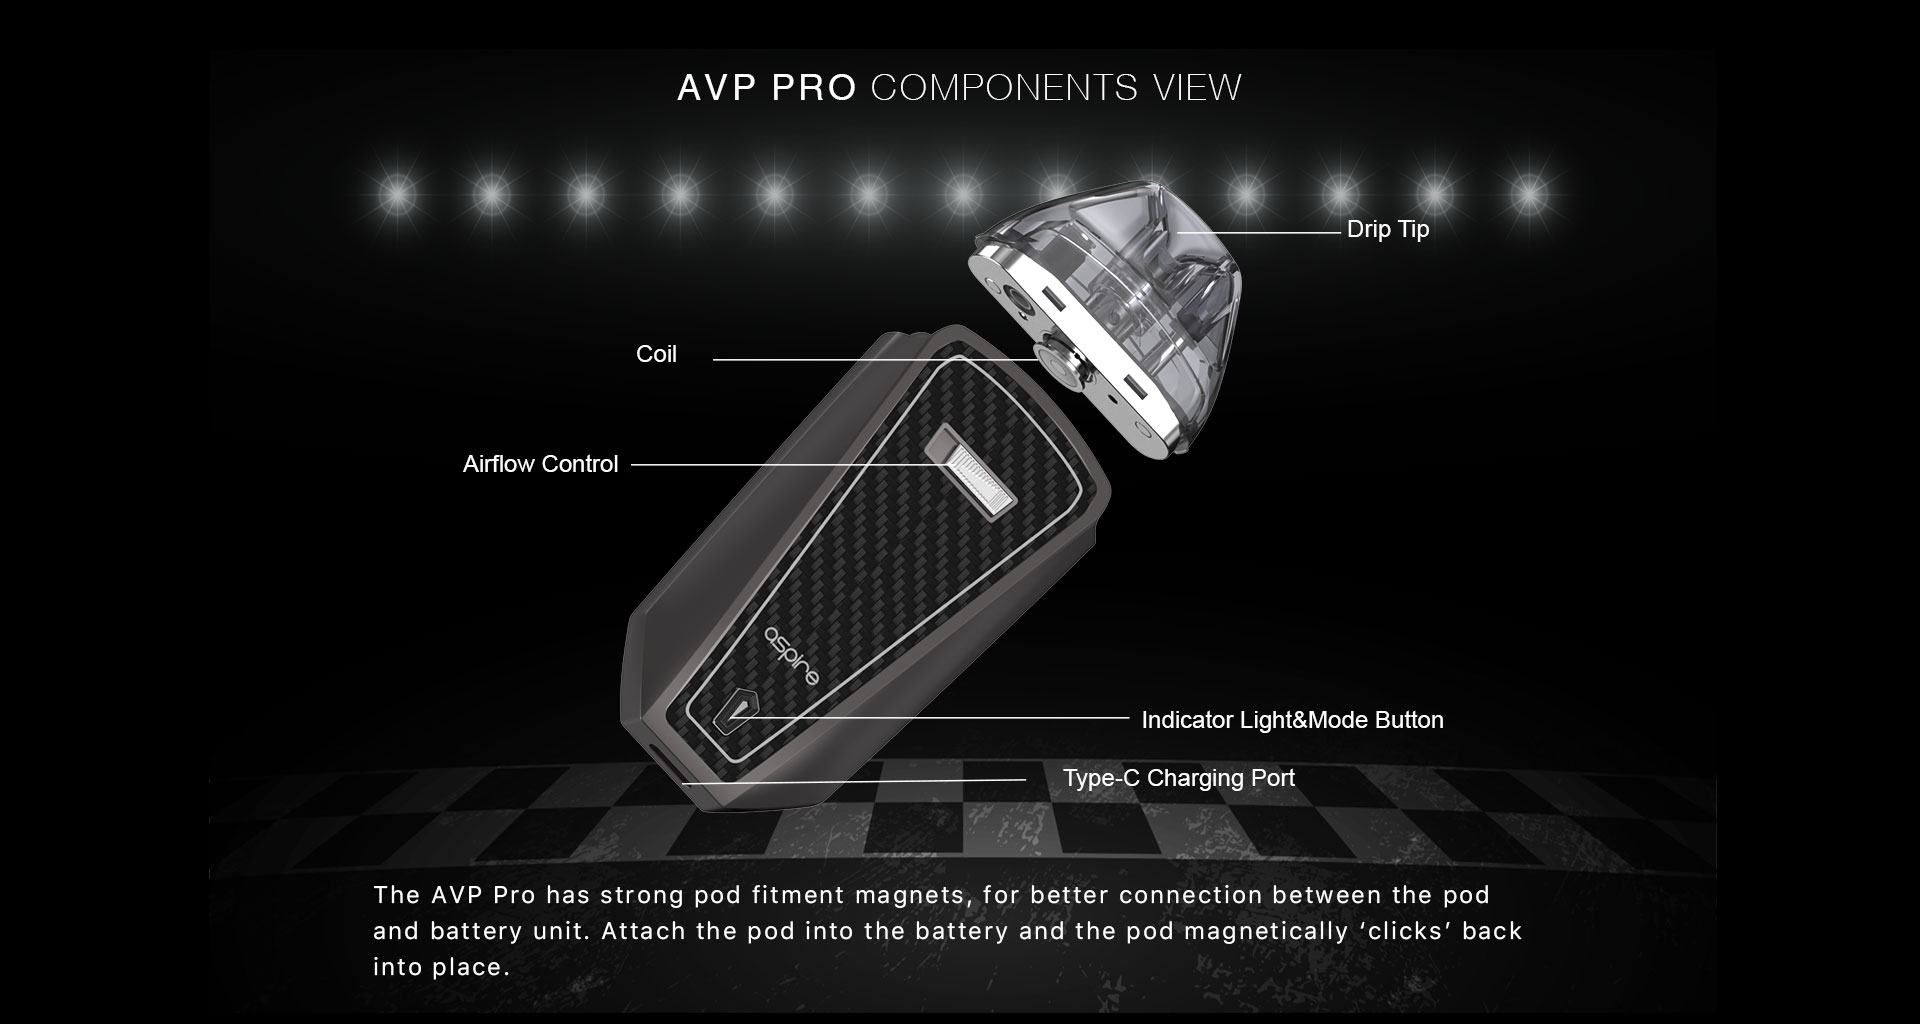 Aspire AVP Pro Kit